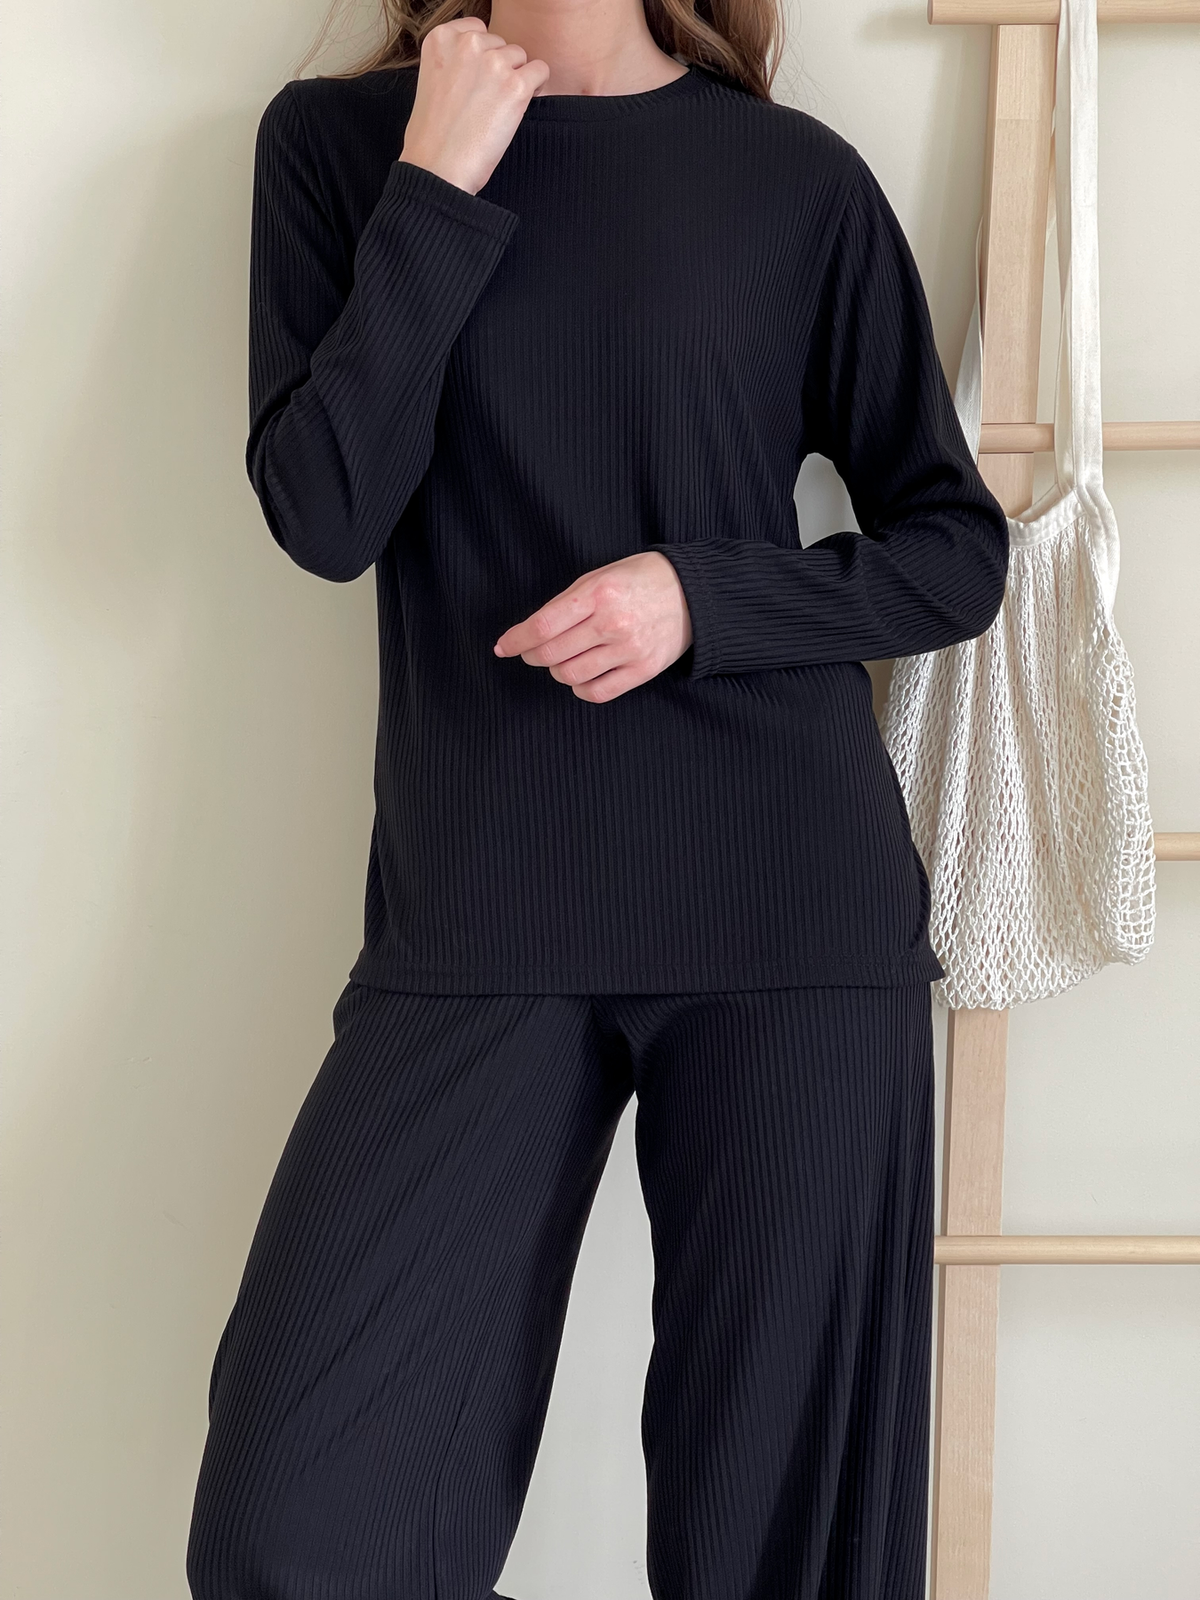 Купить Костюм с широкими брюками в рубчик черный Merlini Менто 100001161, размер 42-44 (S-M) в интернет-магазине